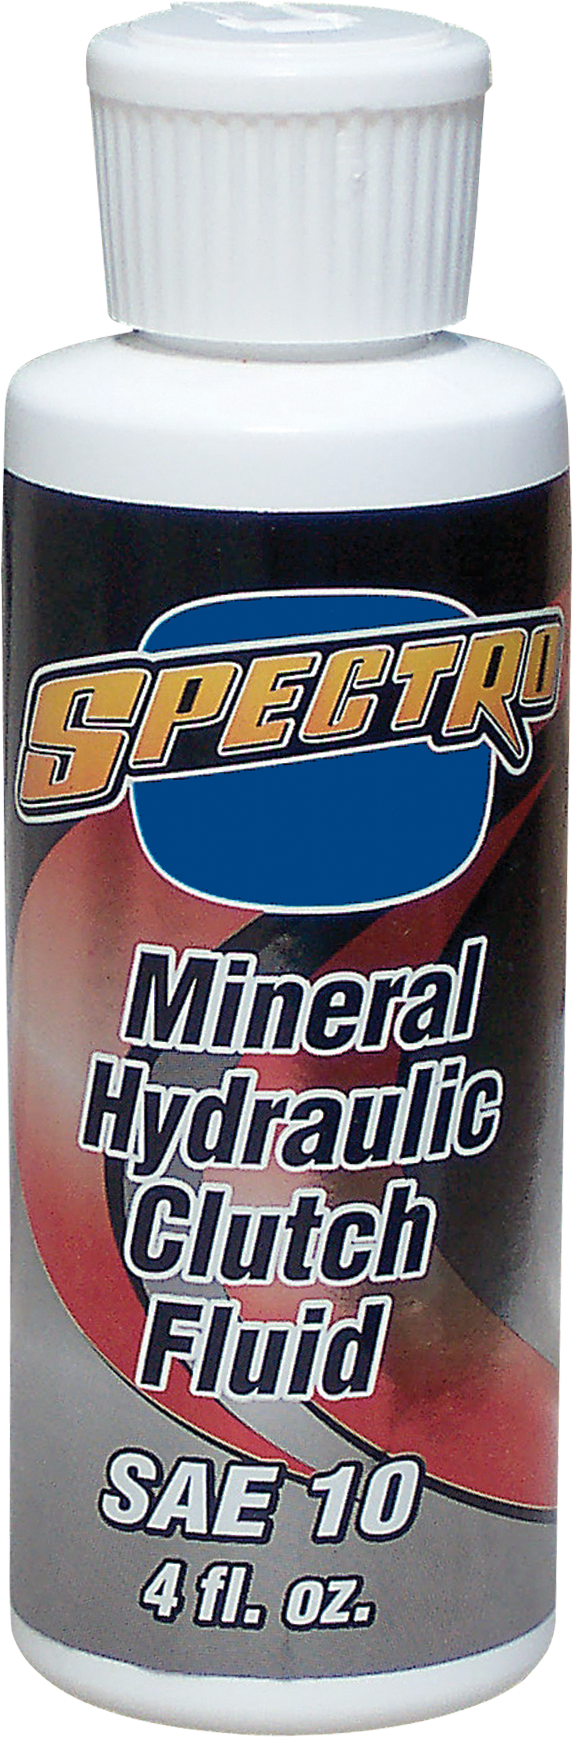 Mineral Hydraulic Clutch Fluid Image